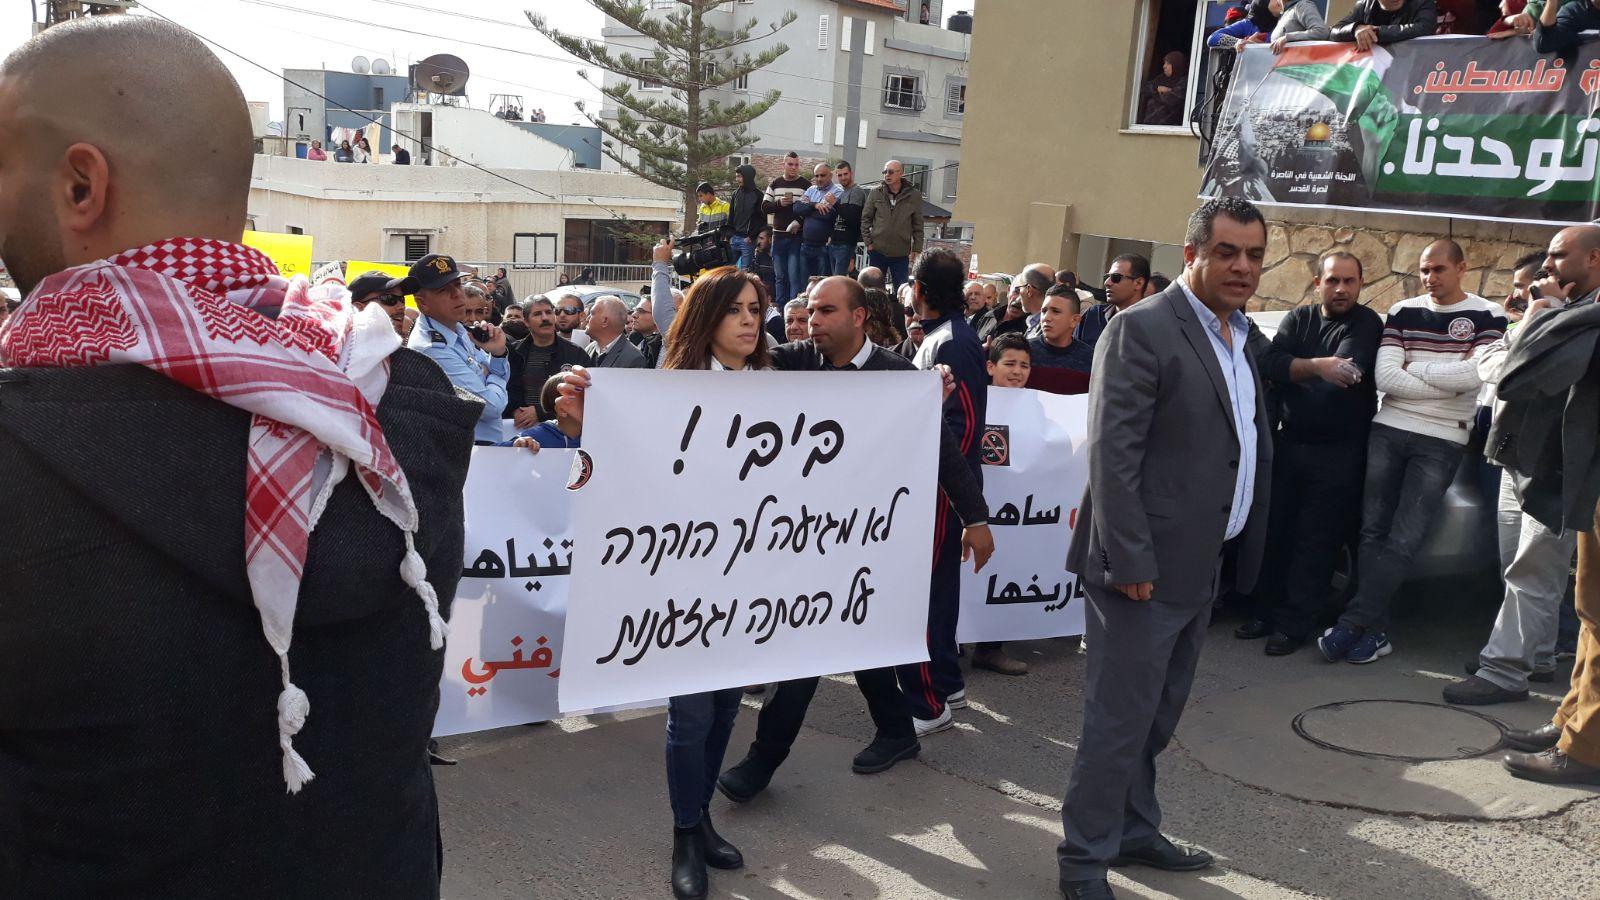  بركة: يتحتّم على فلسطينيي الداخل استقبال نتنياهو   بالصرامي على وجهه   201712280154367